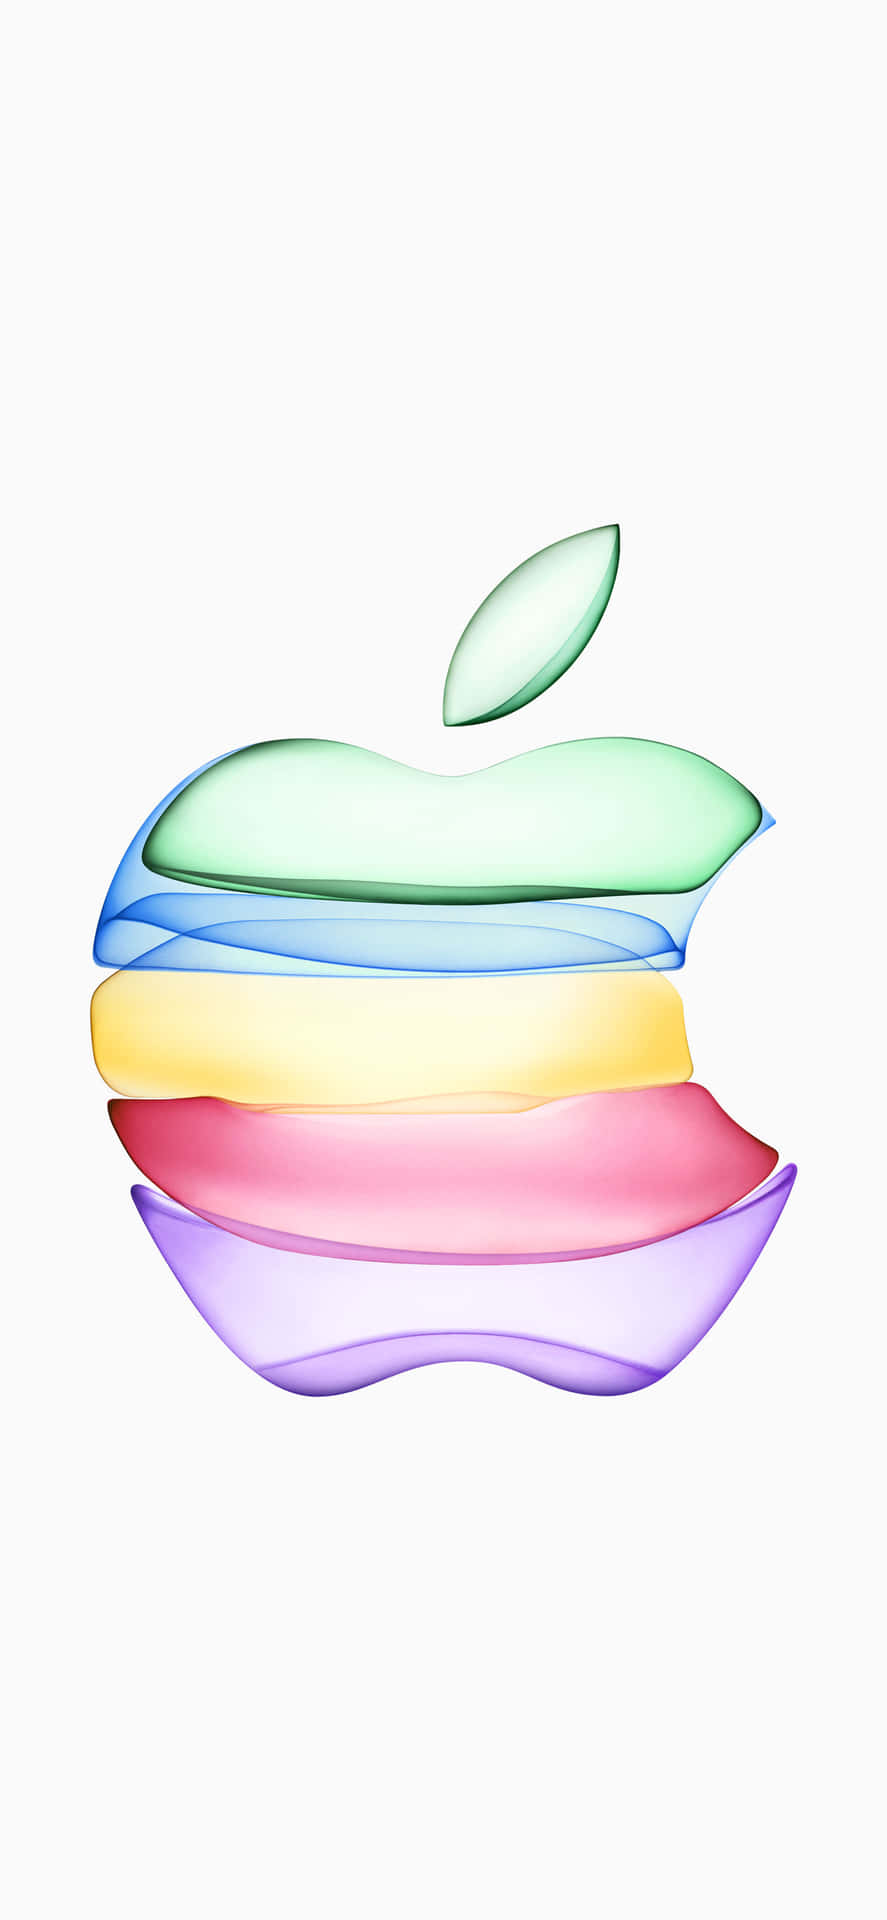 Iphonesxs Max Con El Logo De Apple En Colores Del Arcoíris. Fondo de pantalla